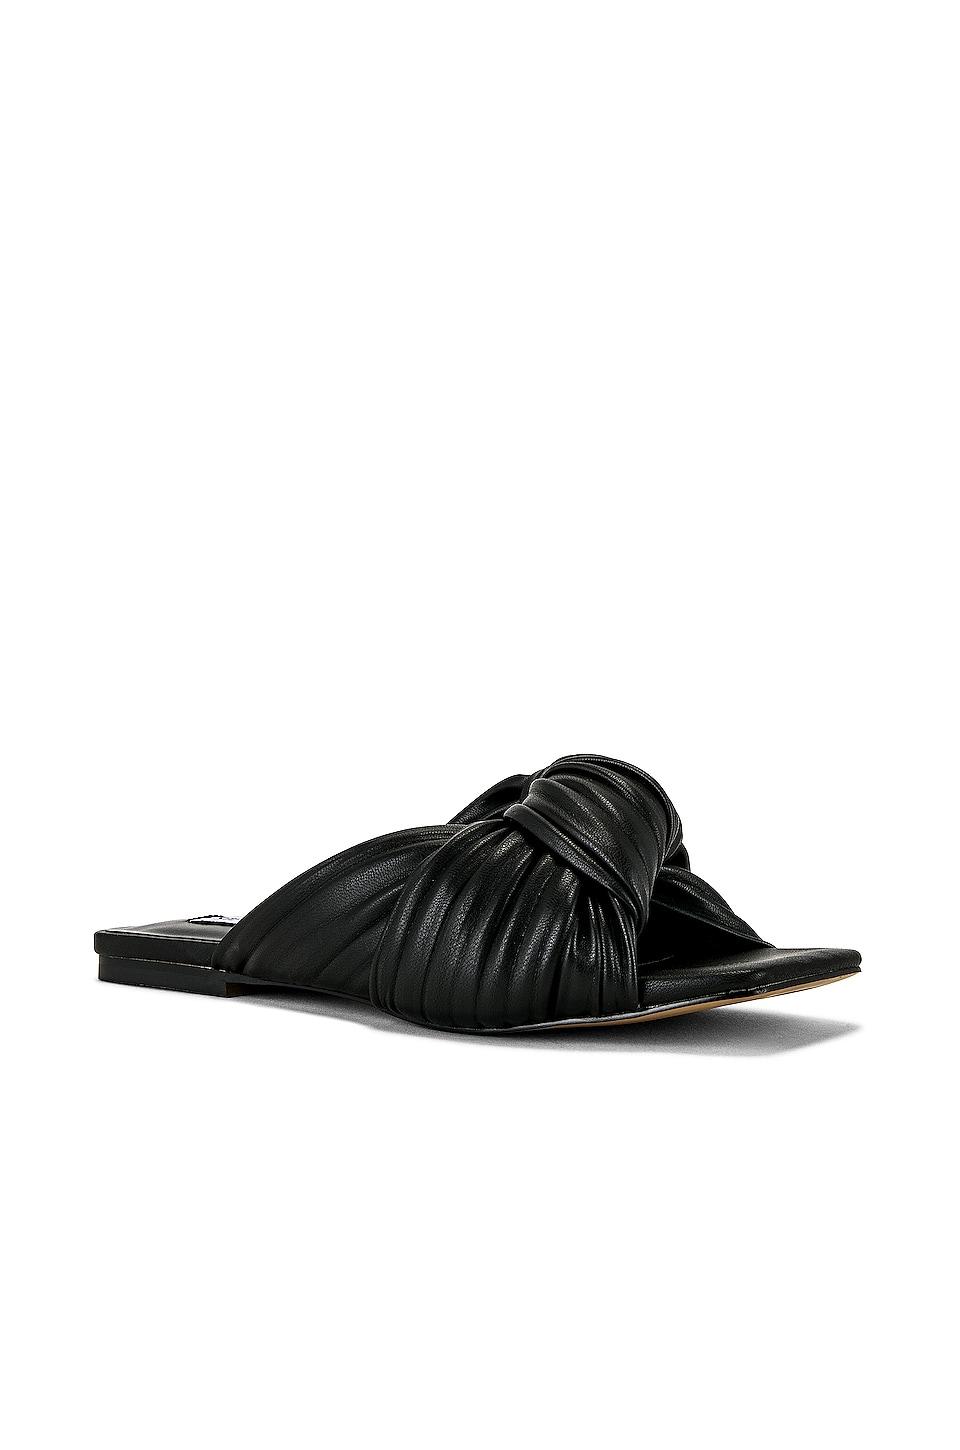 Steve Madden Mentor Sandal in Black | Lyst